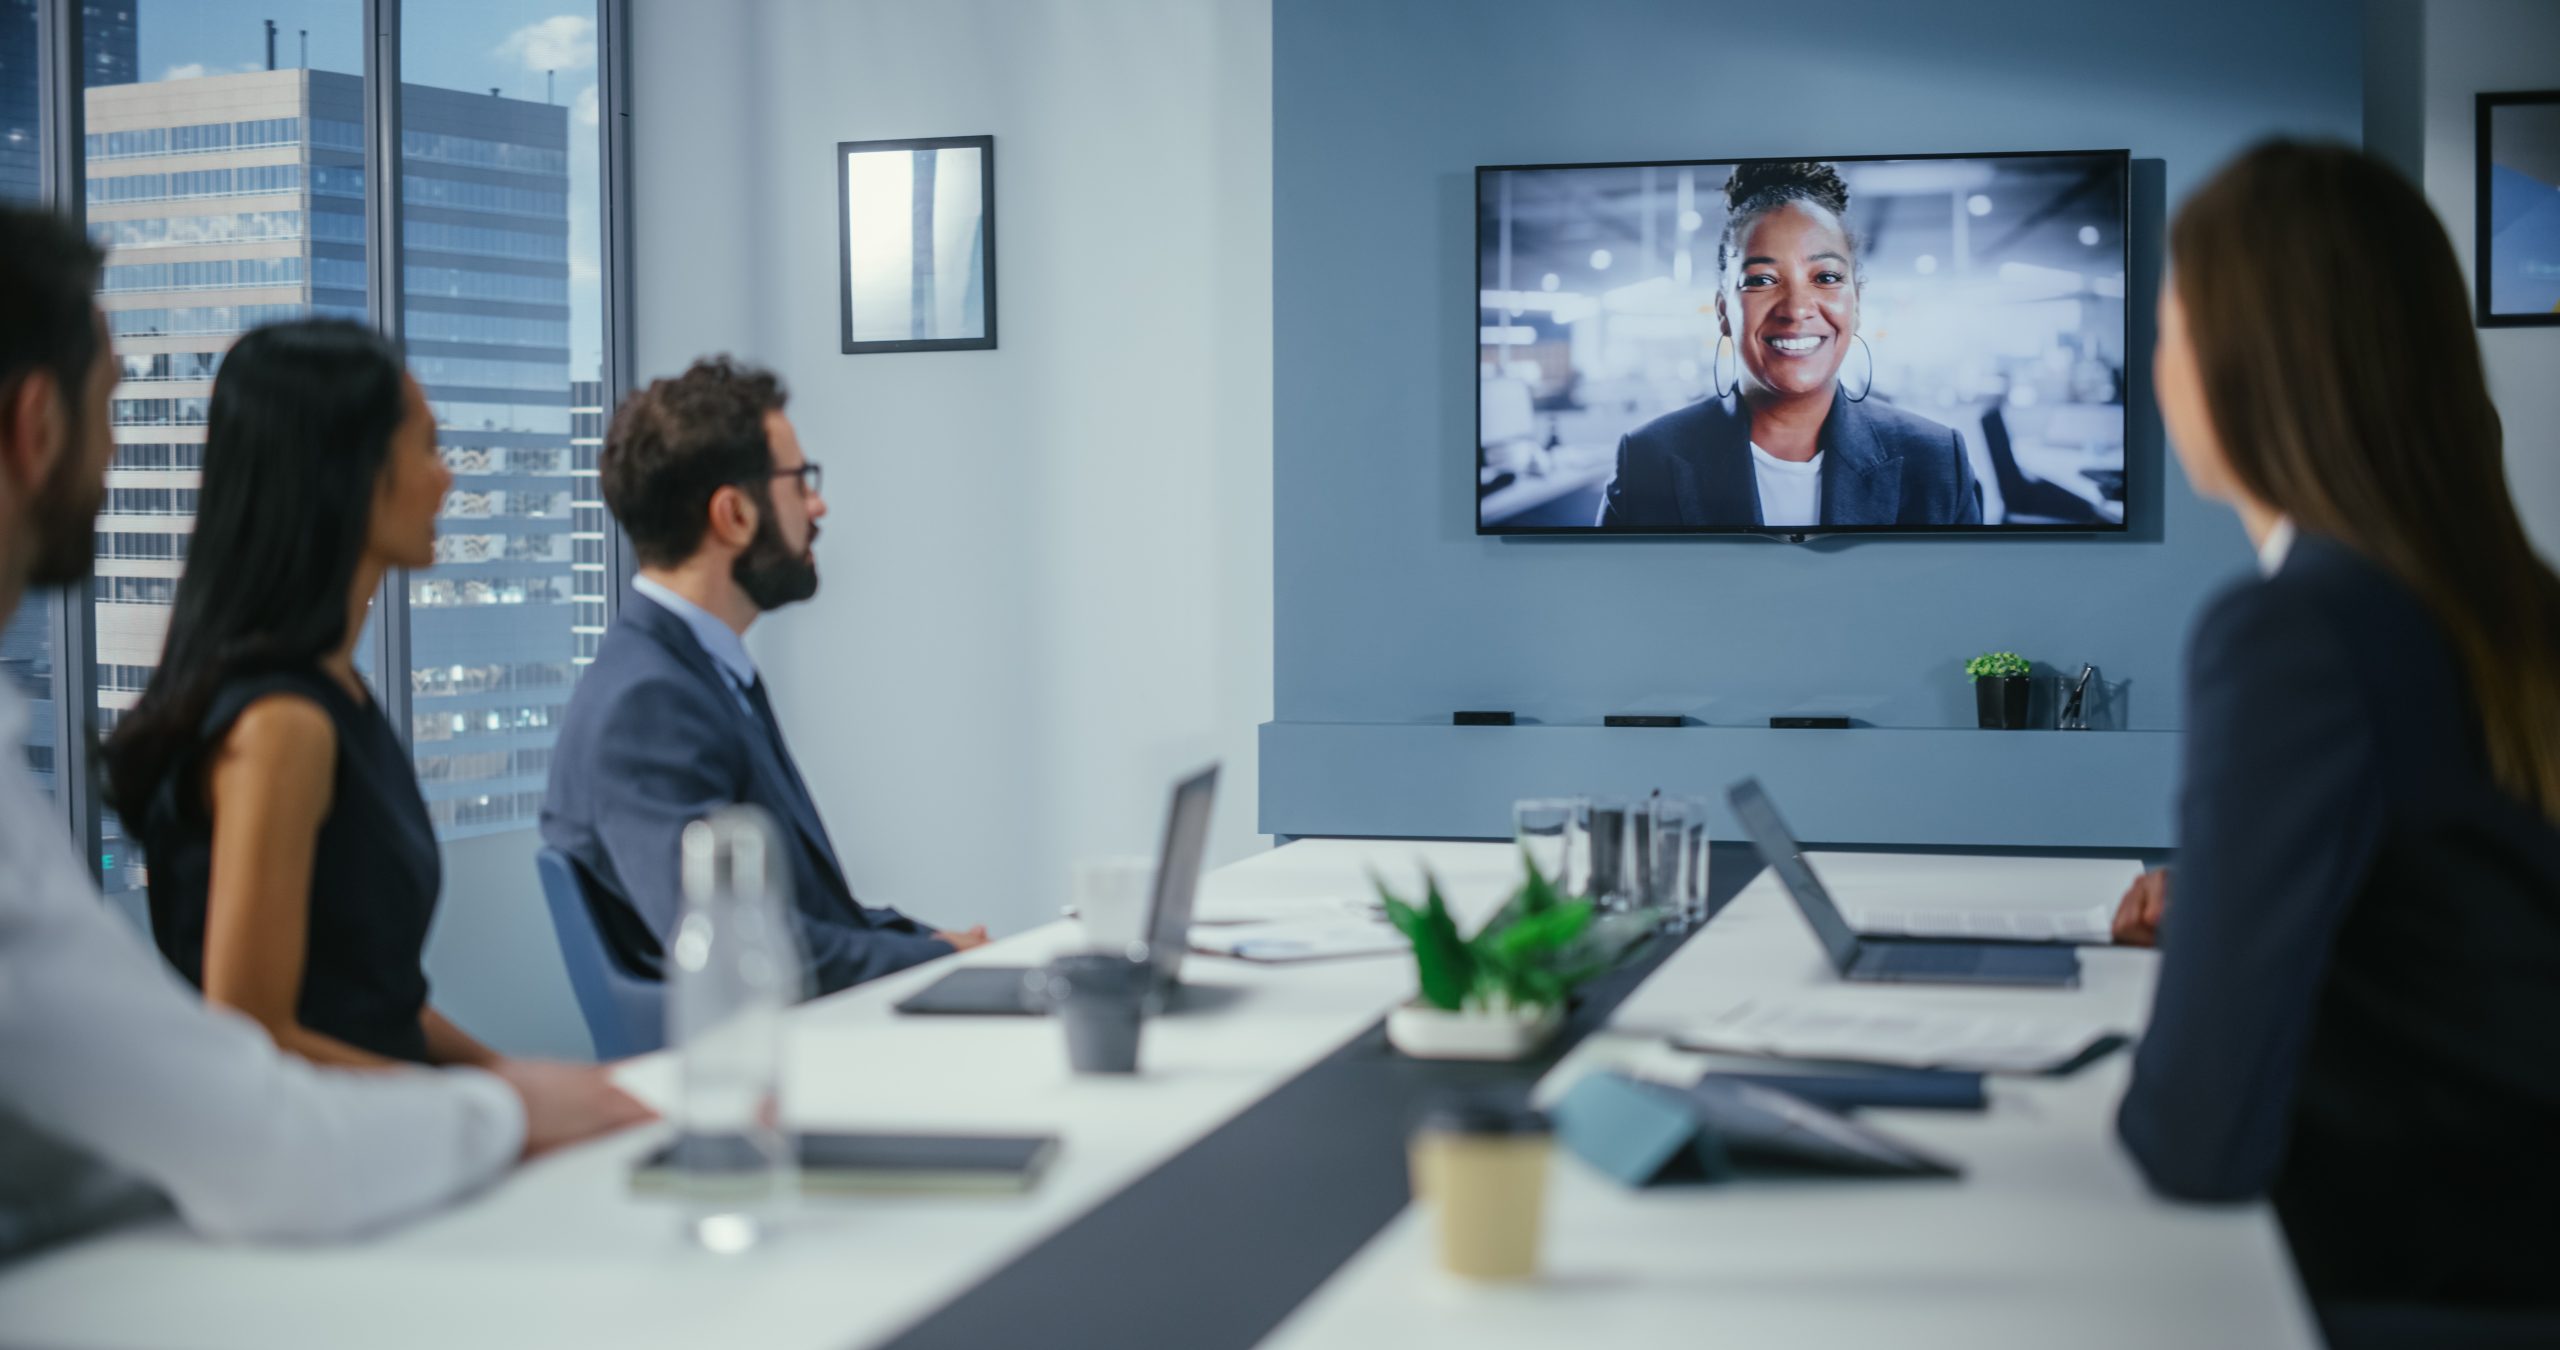 Câmera Inteligente e barra de videoconferência: o que são essas tecnologias que estão aprimorando as reuniões?